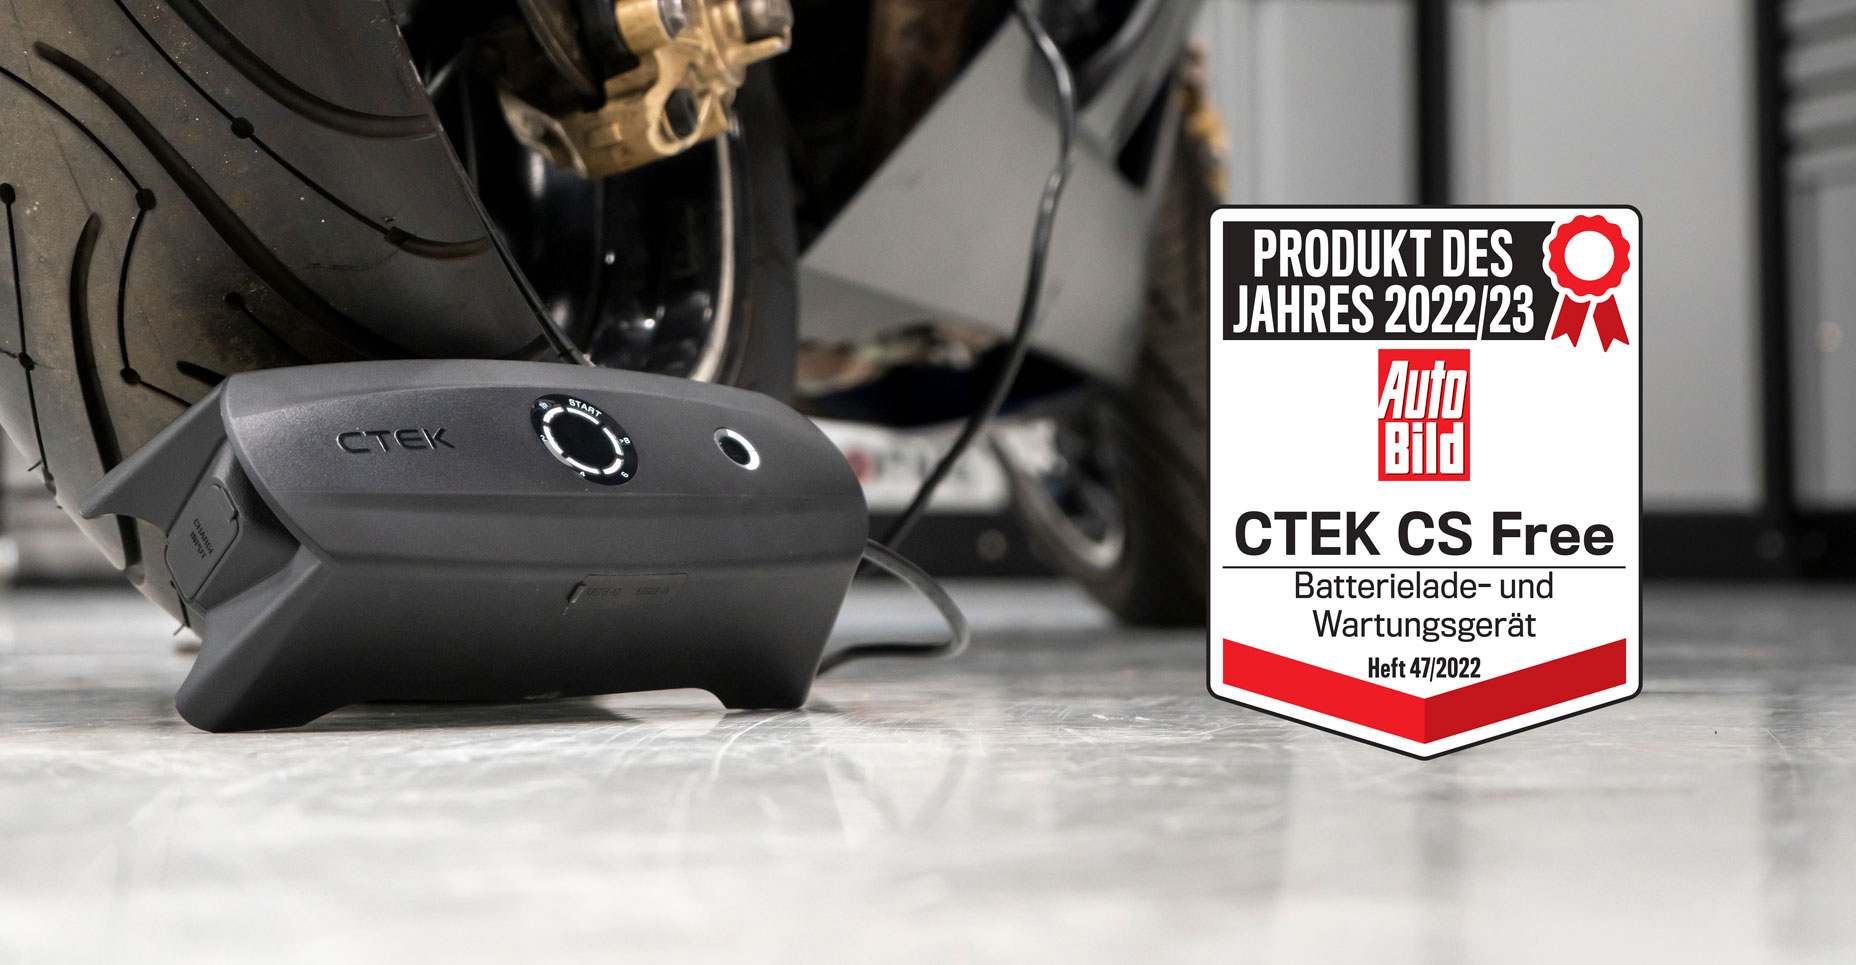 CTEK CS FREE Chargeur portable multifonctionnel 4-en-1 12V avec technologie Adaptive Boost, Référence: 40-462 - ctek.com